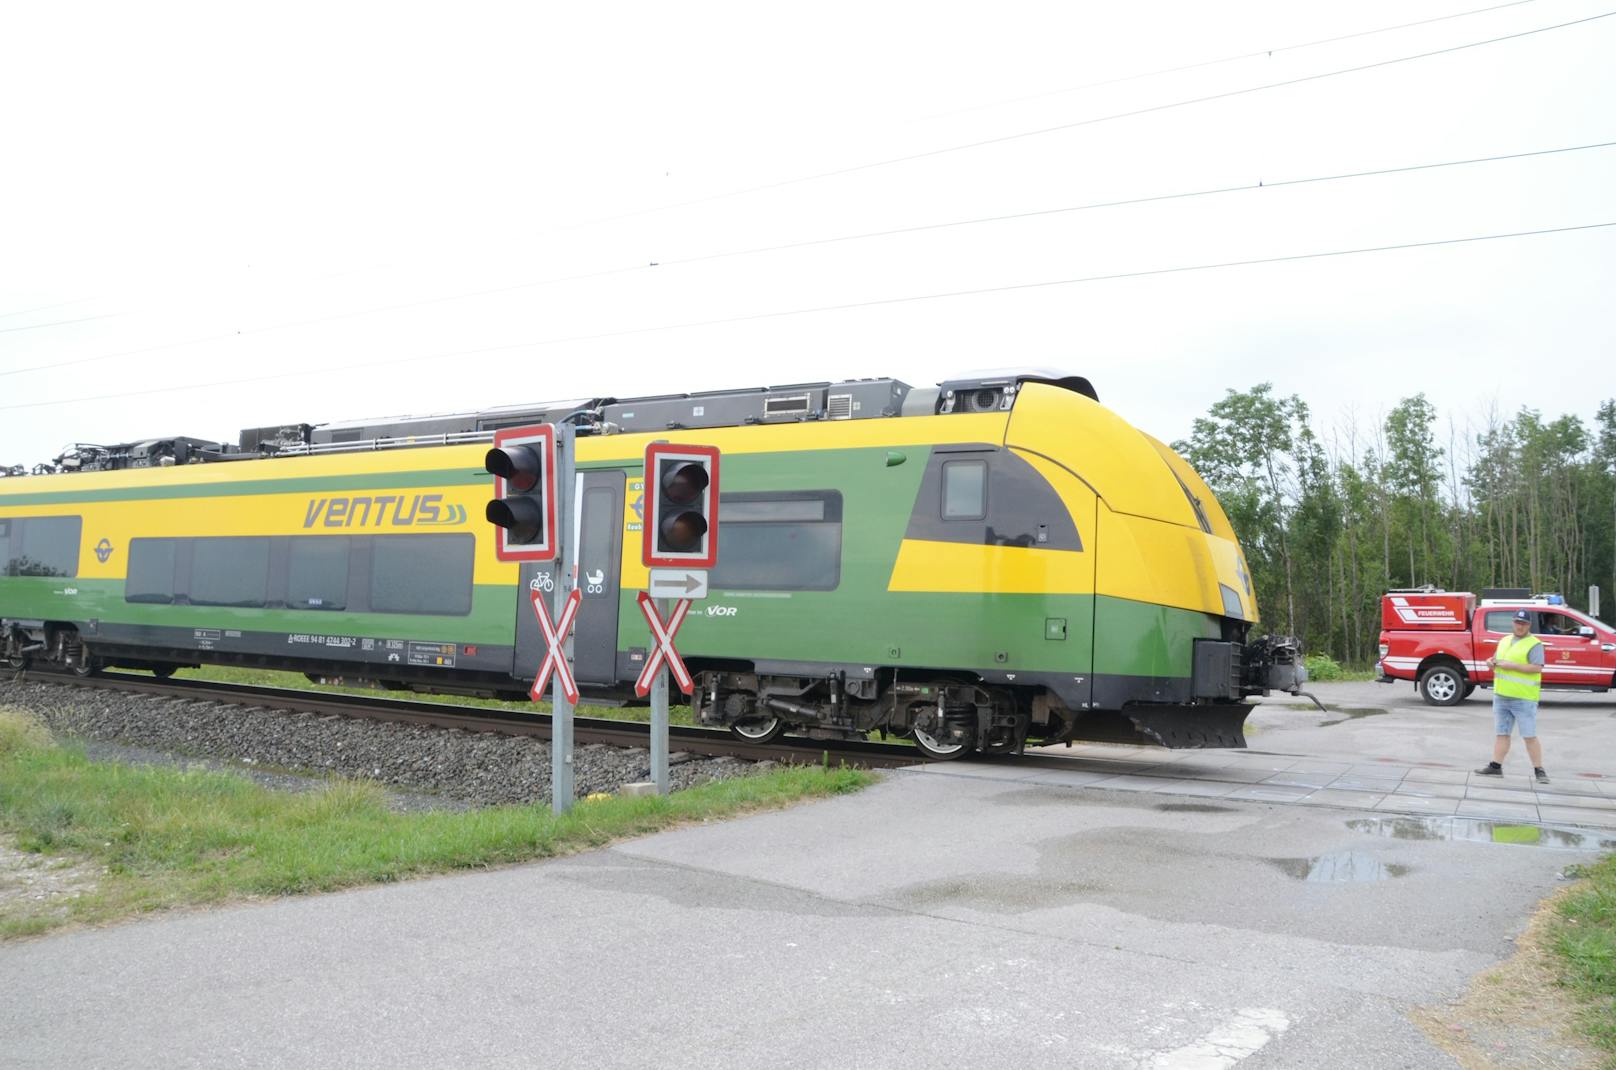 Bei der Kollision eines Zugs der Raaberbahn mit einem Pkw wurden zwei Menschen getötet (11. August 2020)